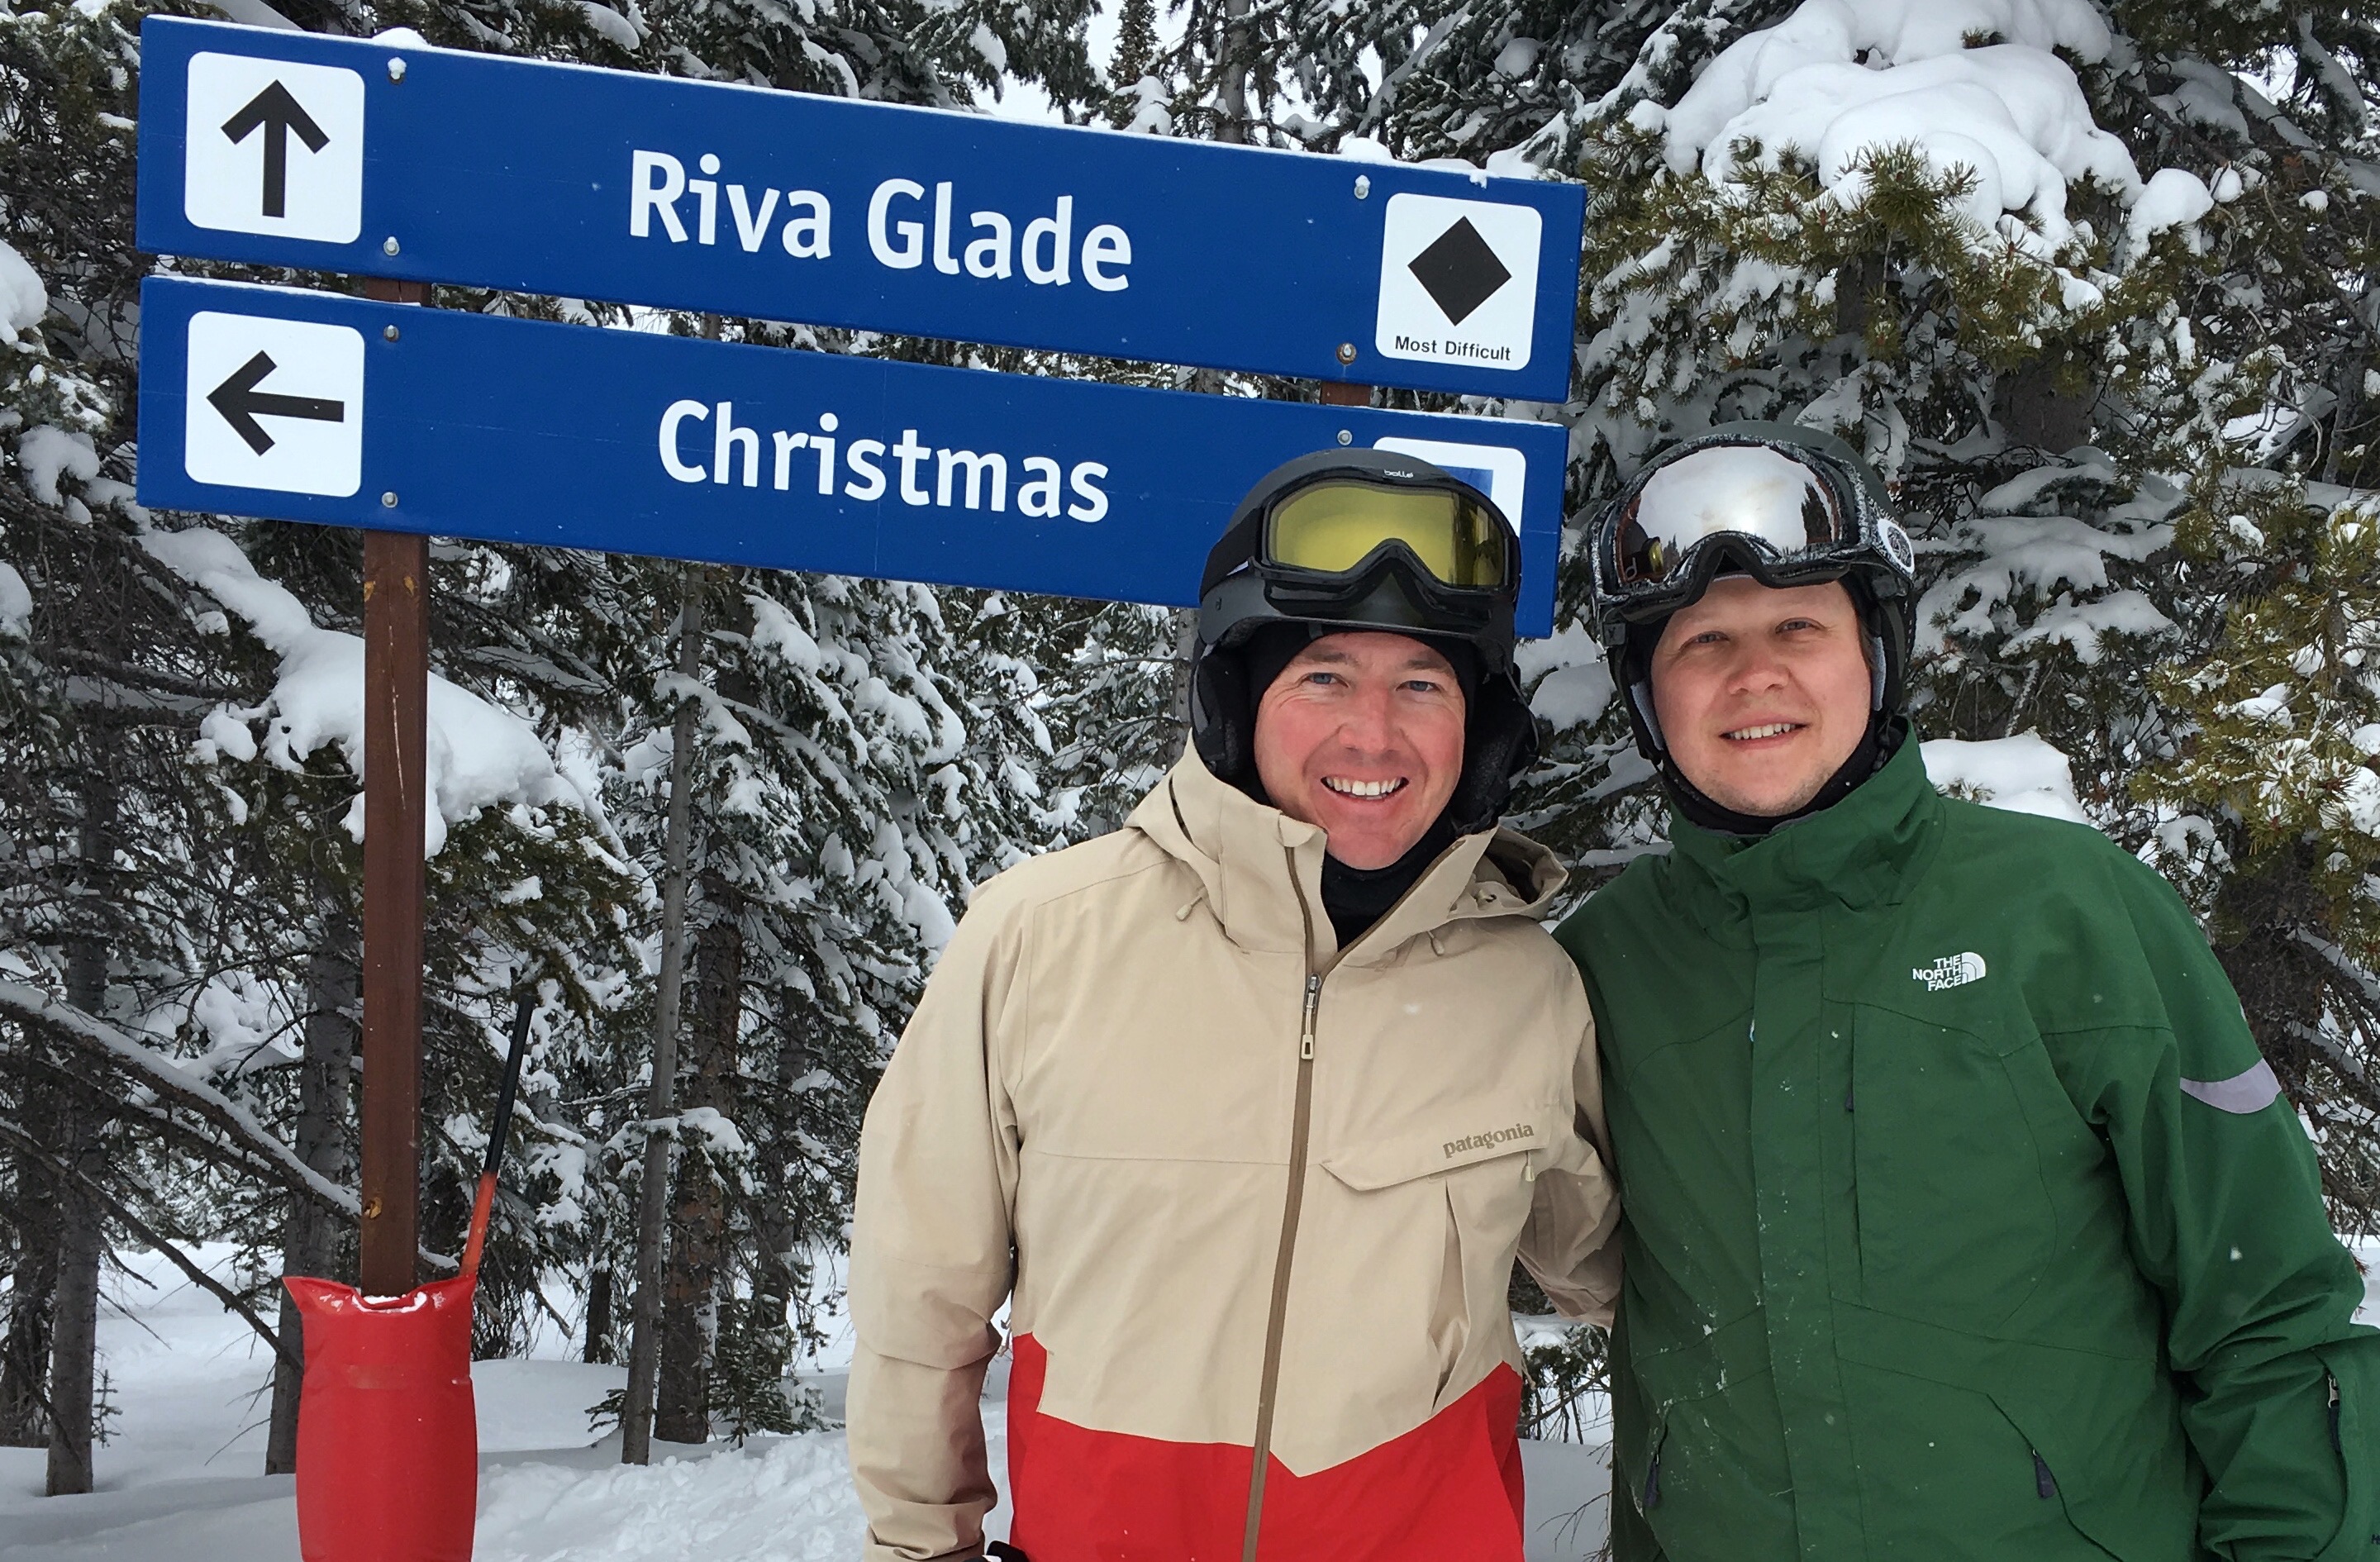 Skiing Vail's Christmas run on Christmas!